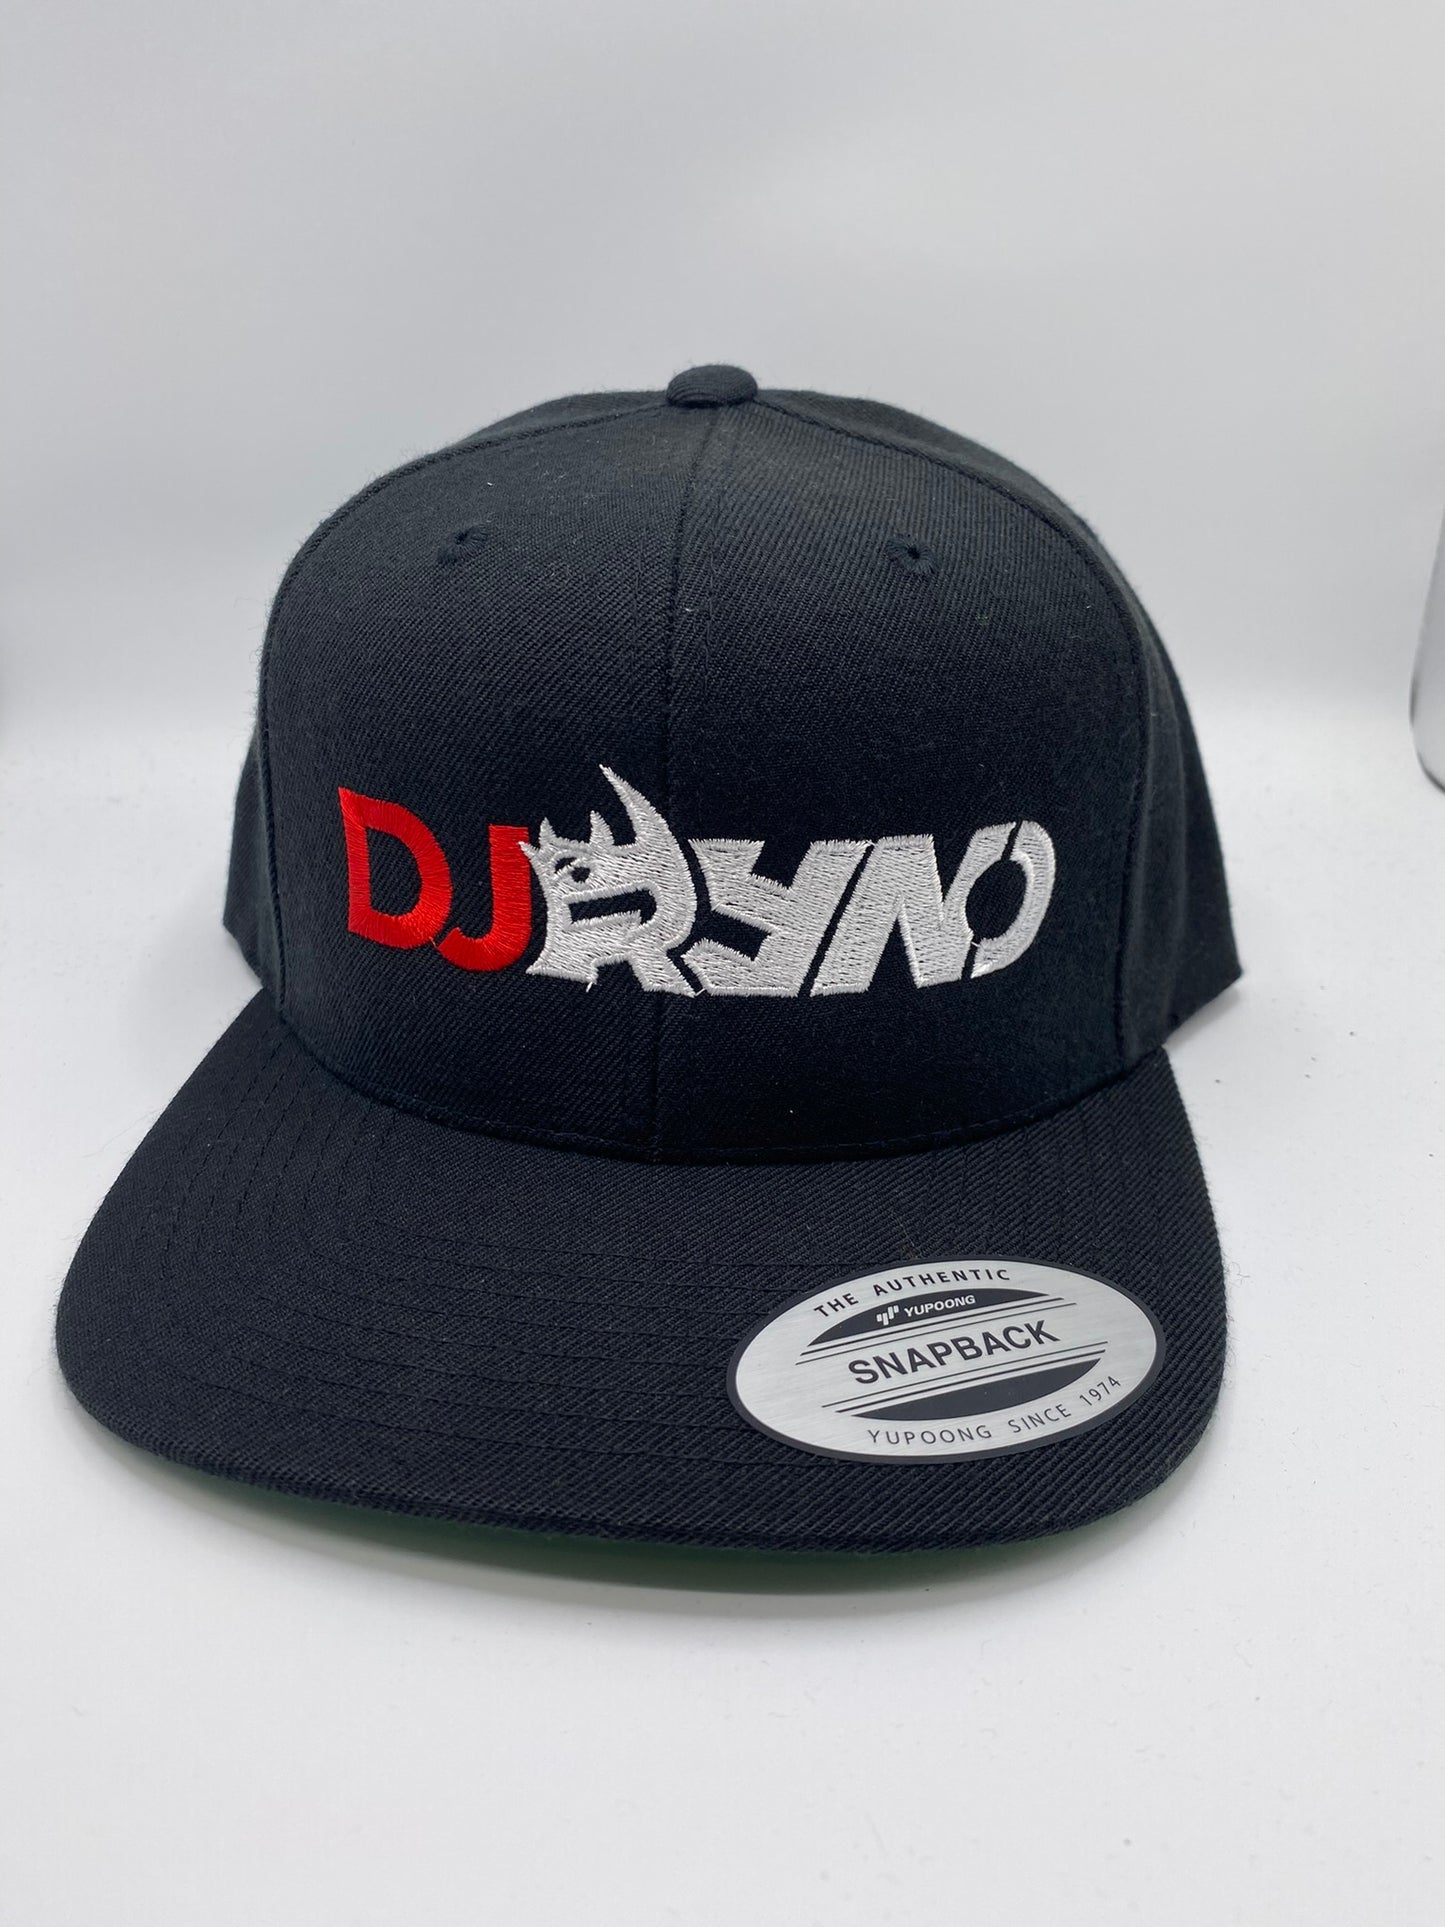 DJ Ryno Embroidered Snapback Flatbill Hat